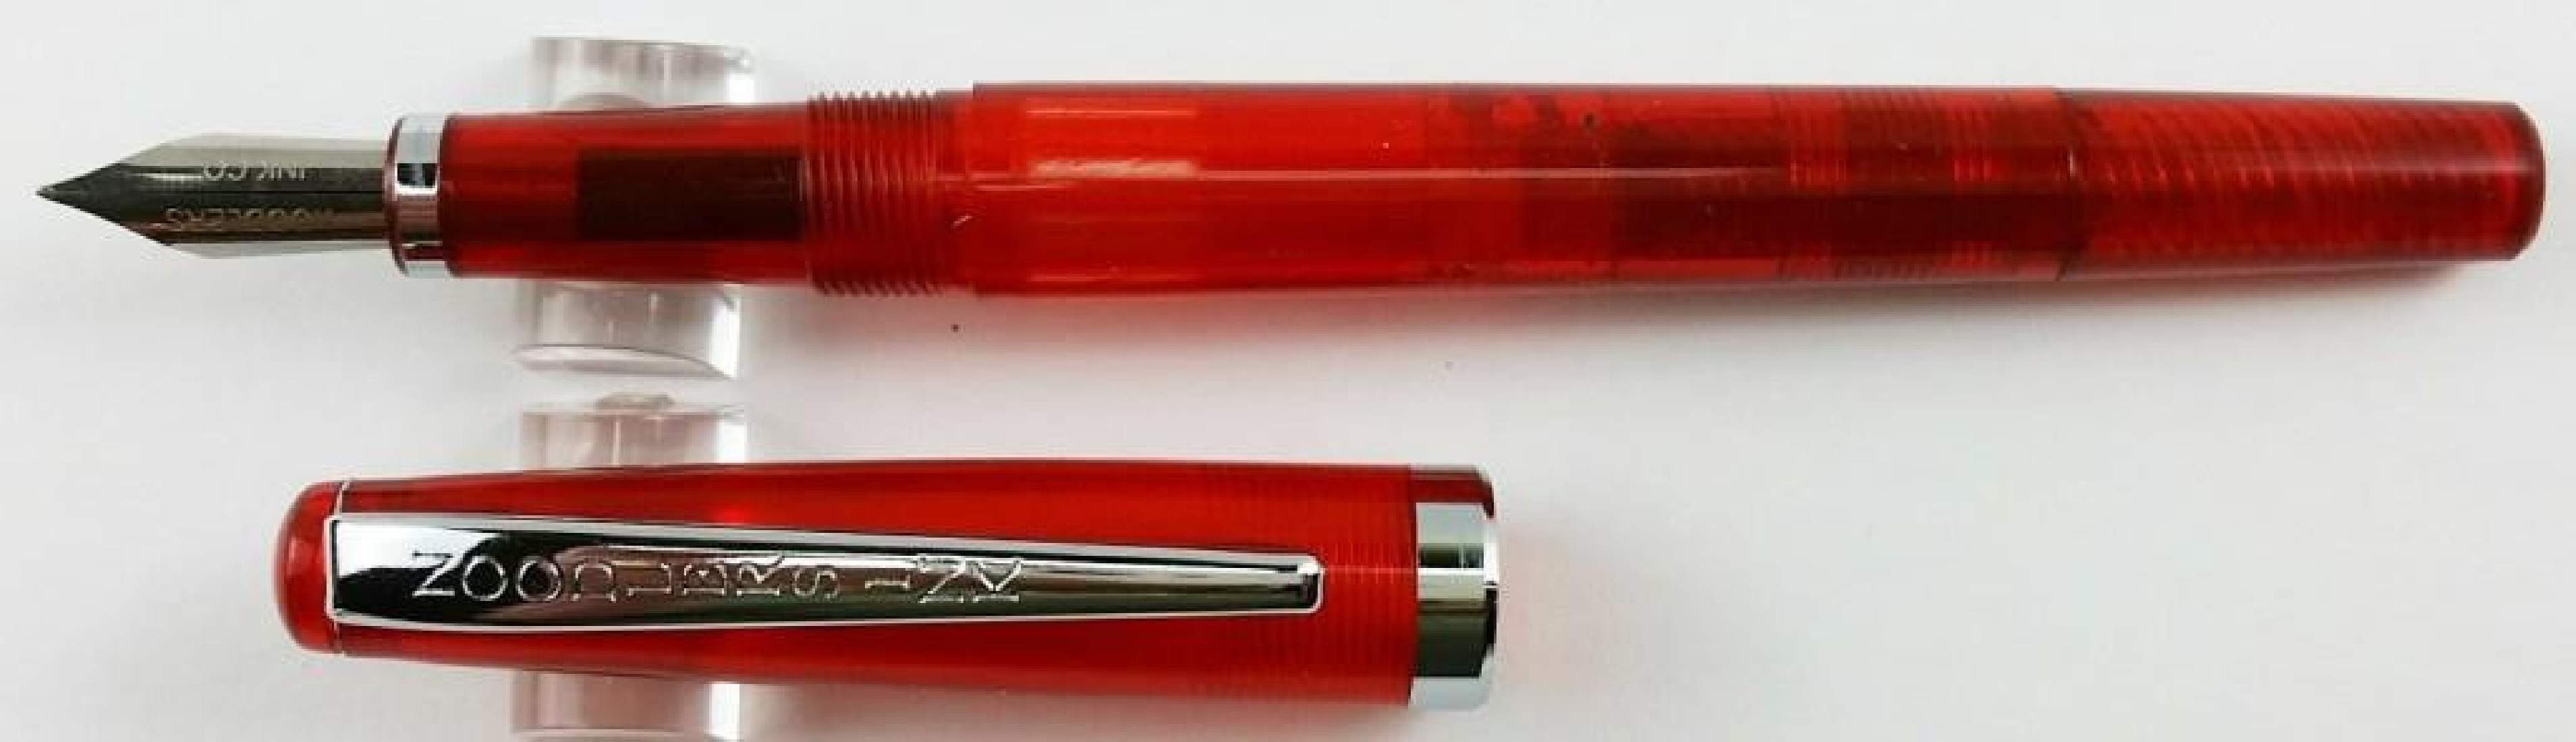 Noodlers Creaper Burmese Ruby Standard Flex 17033  Fountain Pen